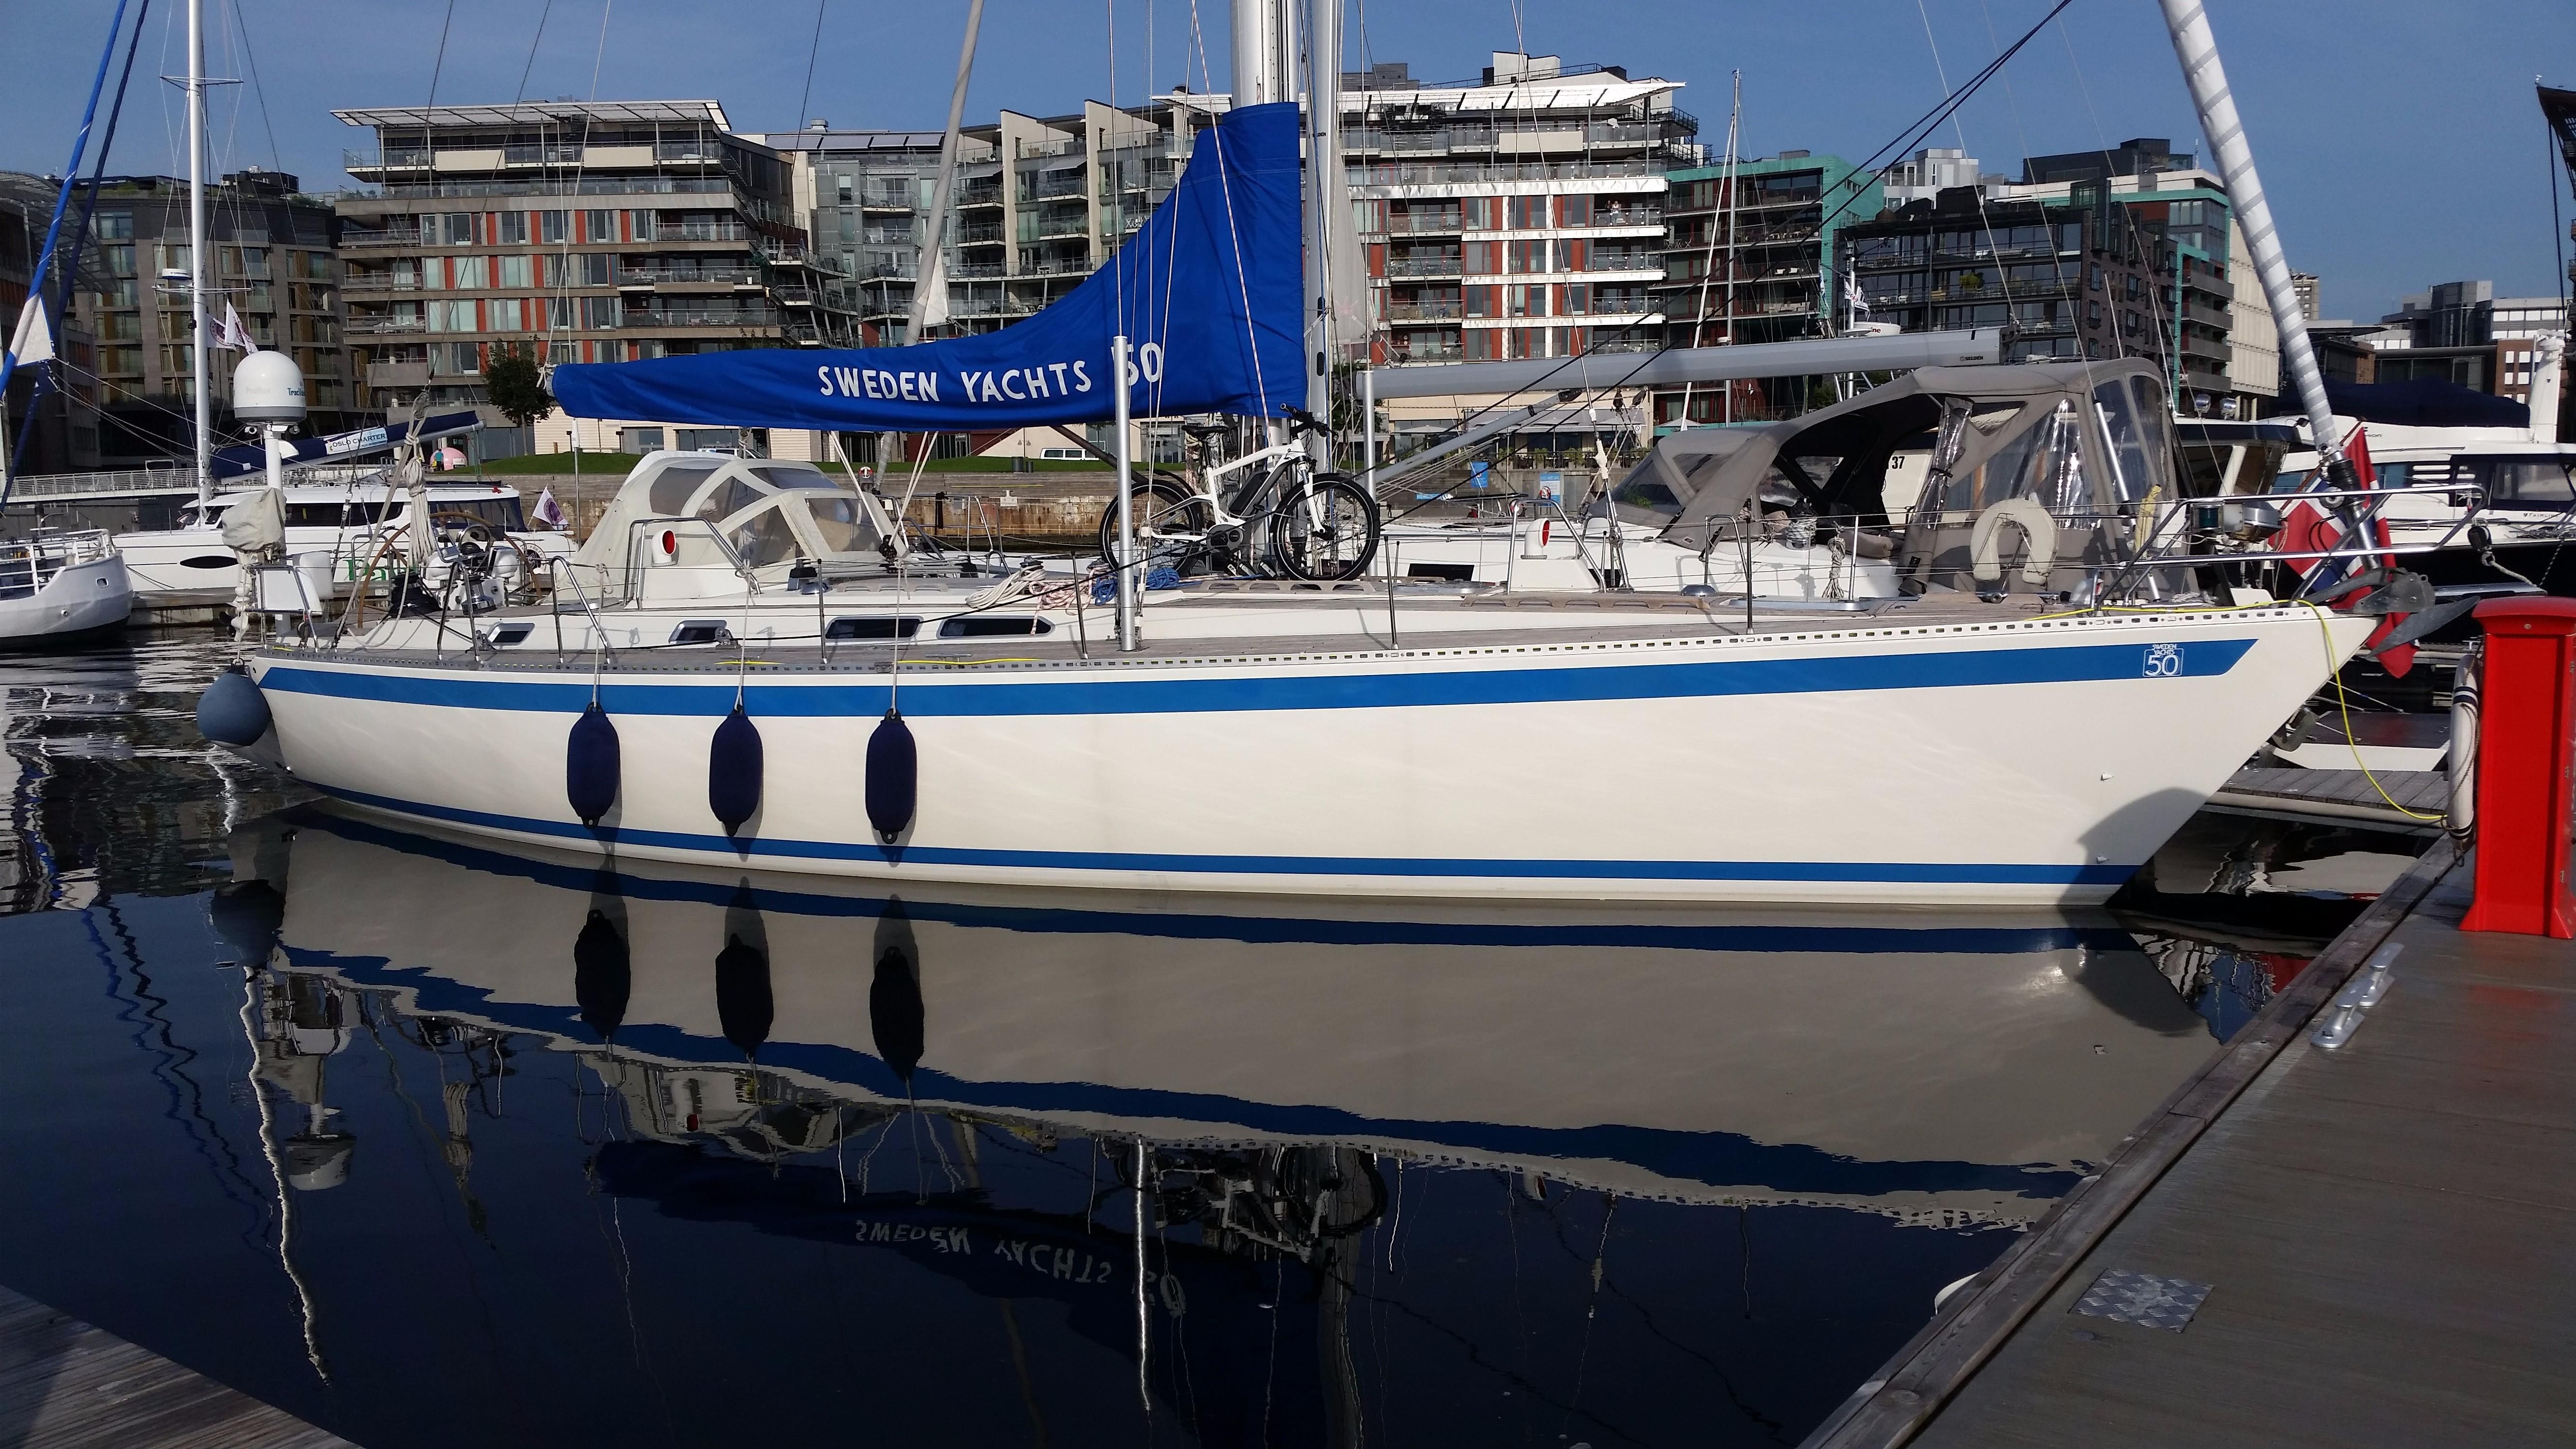 sweden yachts for sale uk